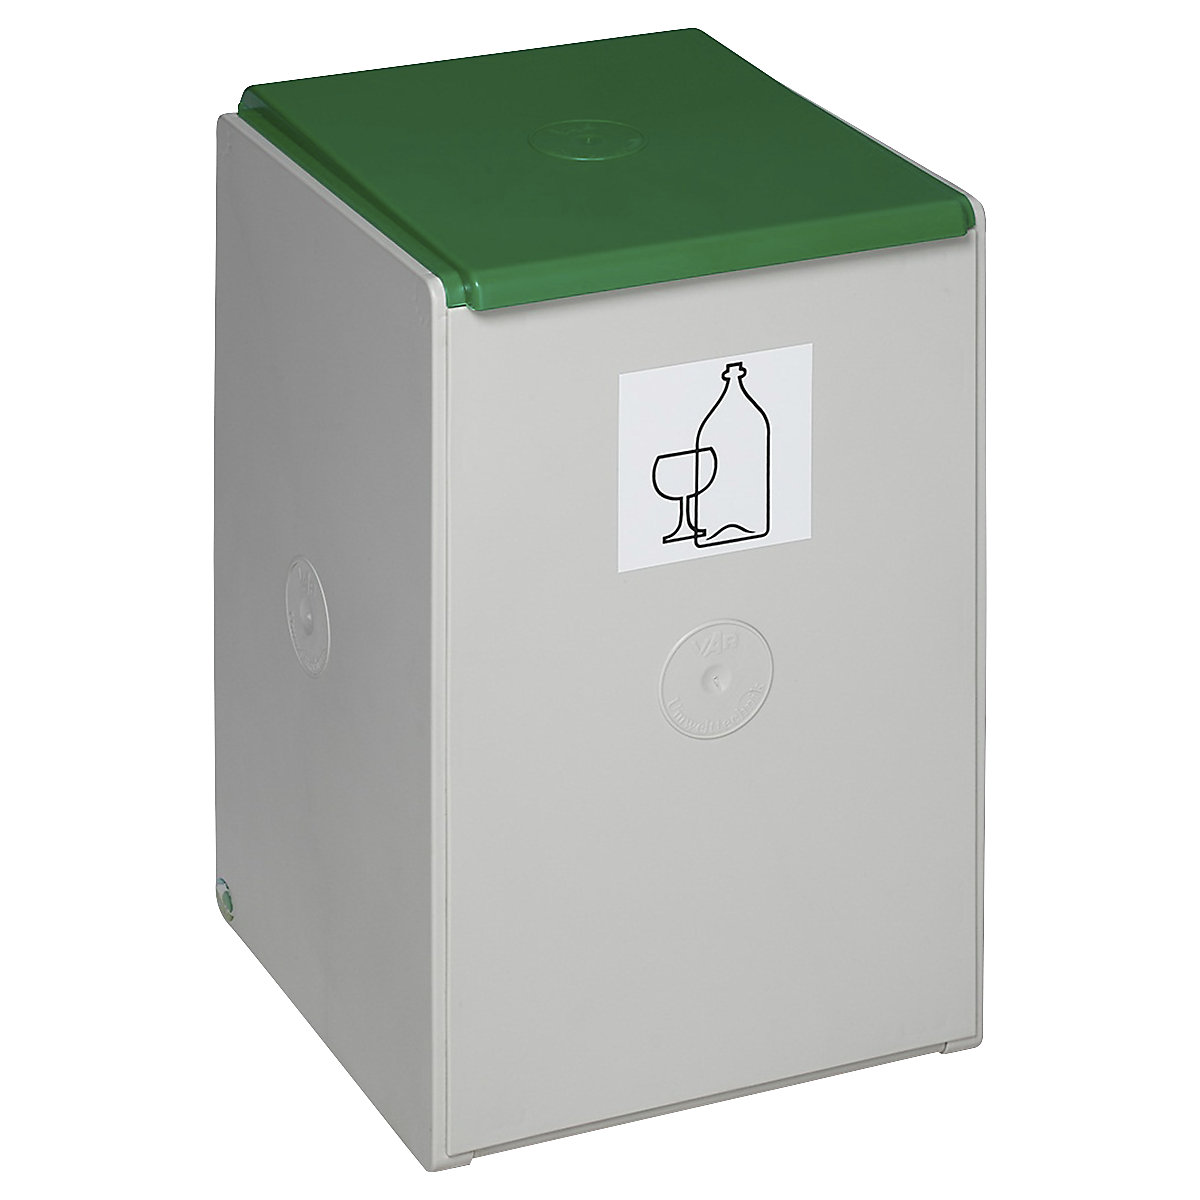 Recipient de sortare și colectare pentru materiale reciclabile – VAR